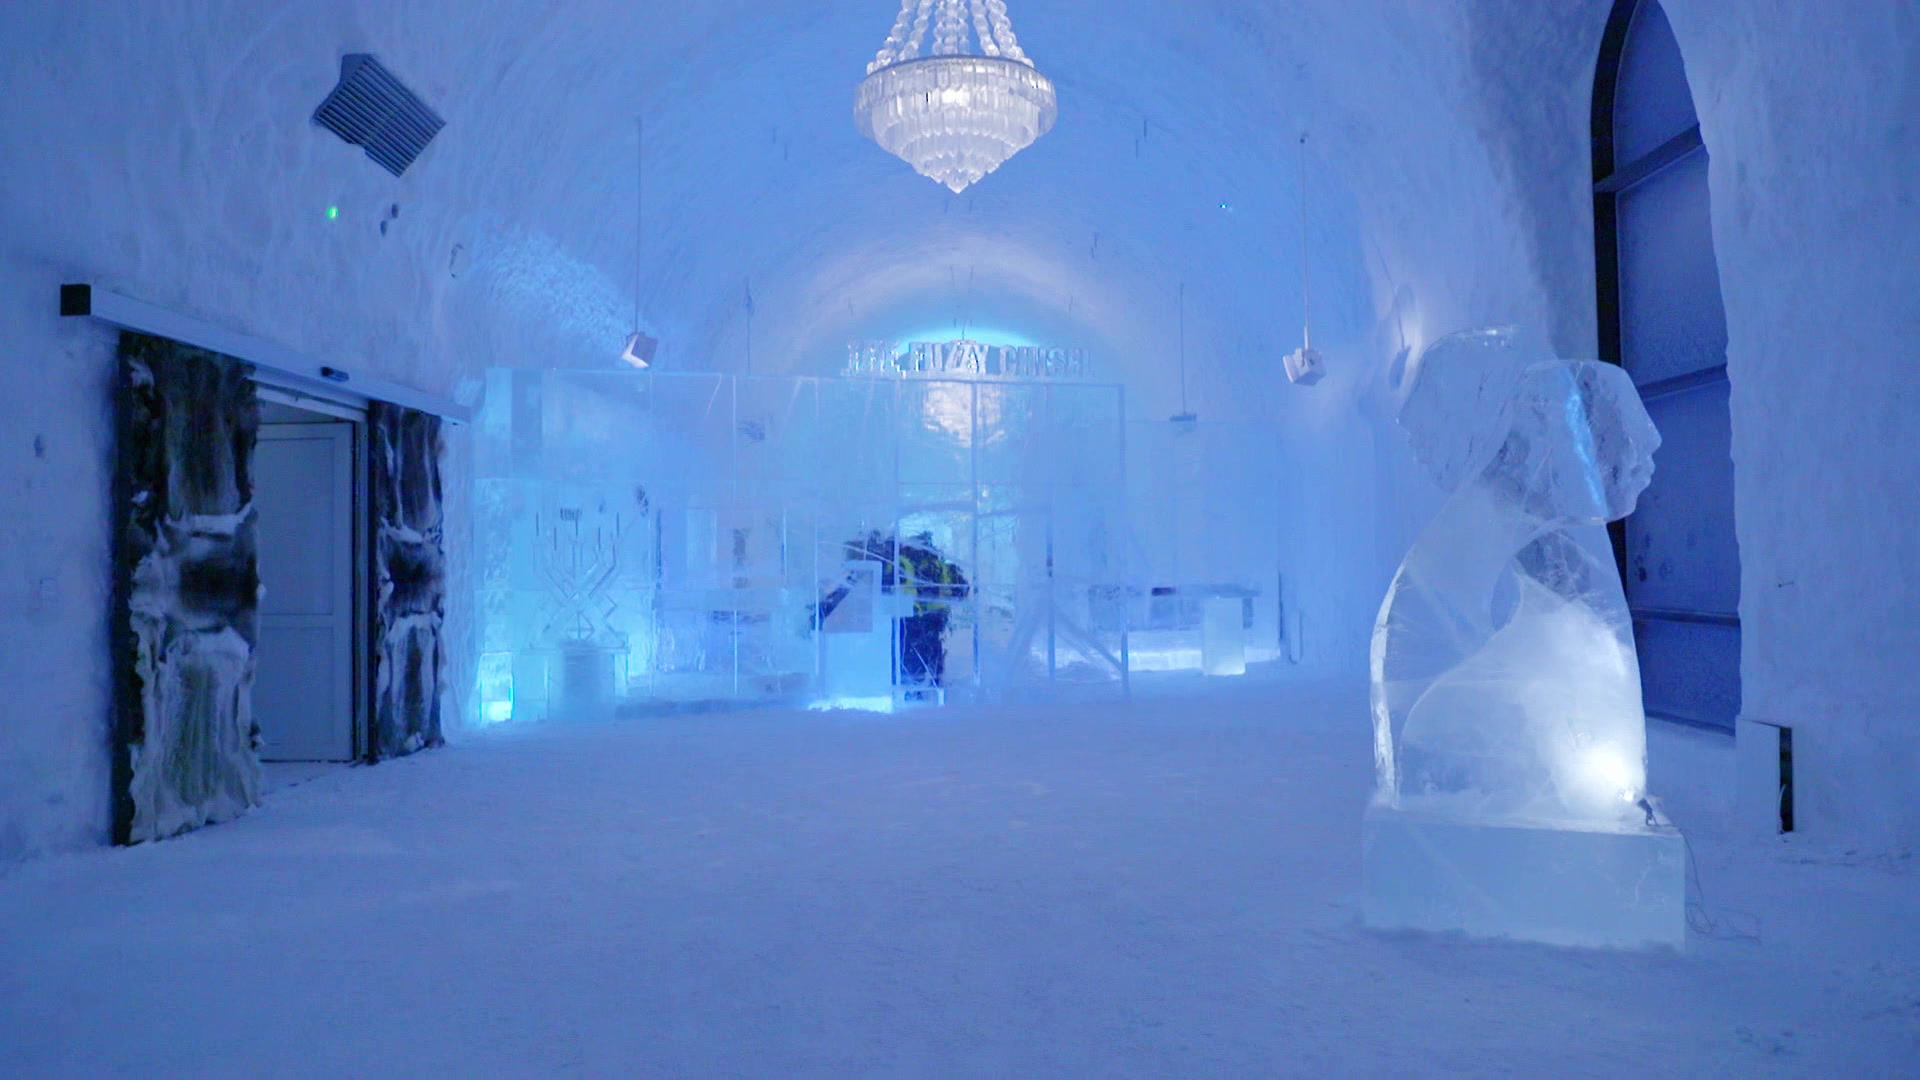 Icehotel, Sweden